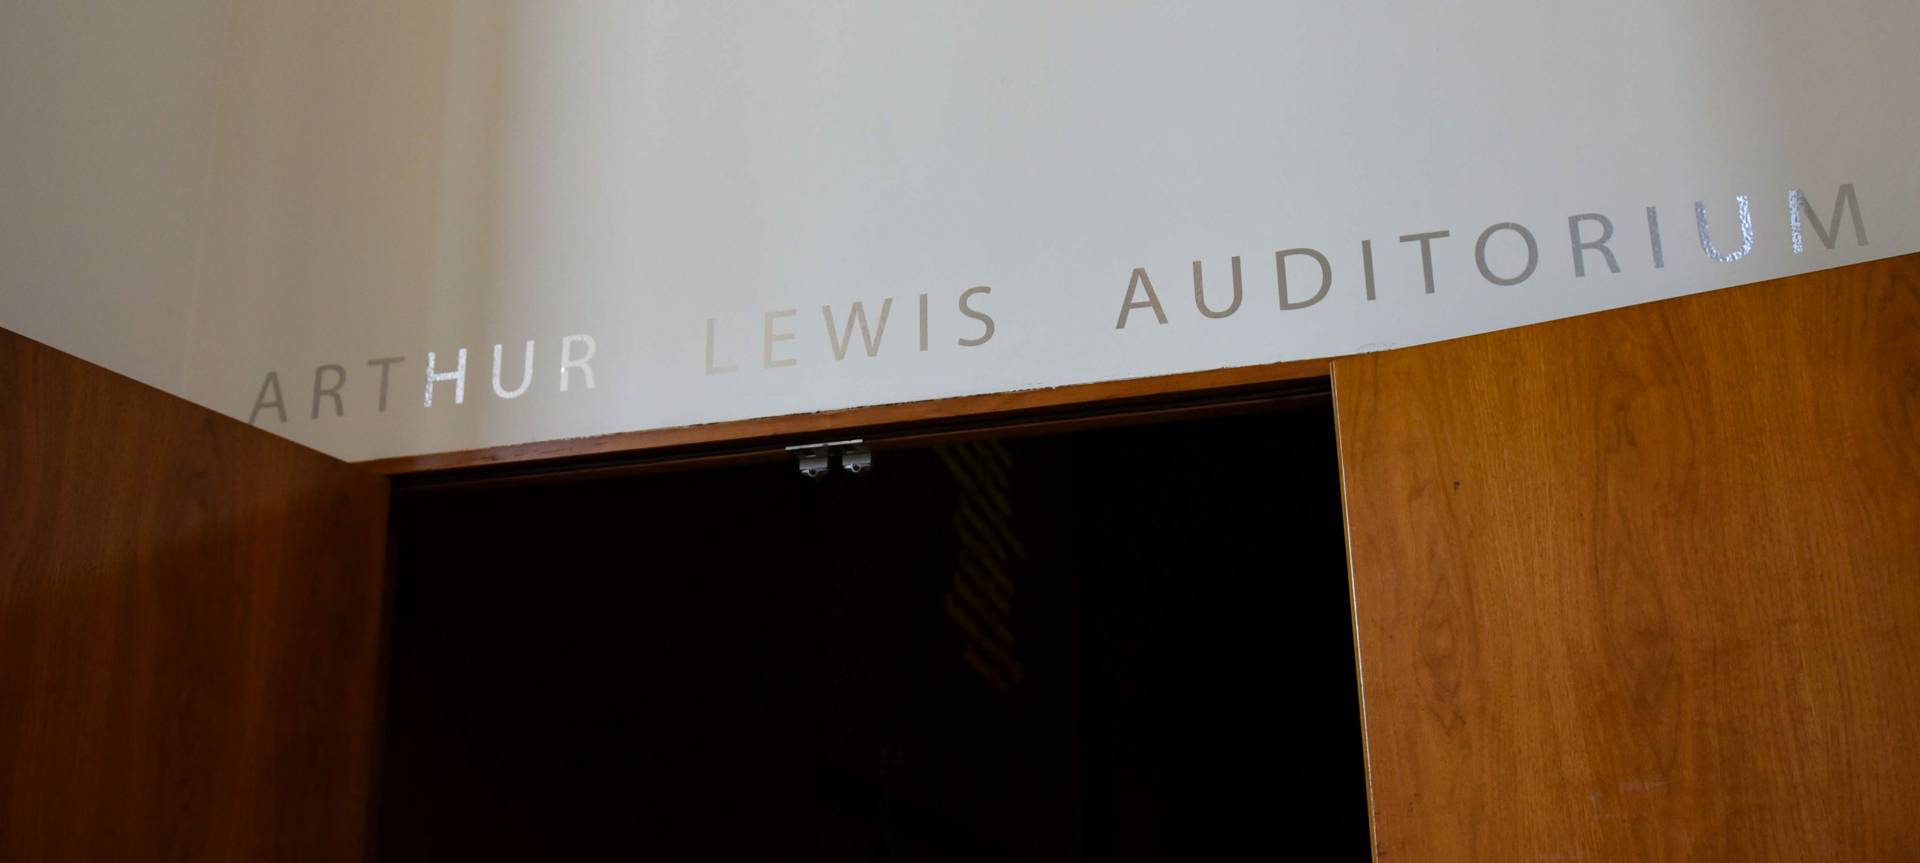 Arthur Lewis Auditorium sign